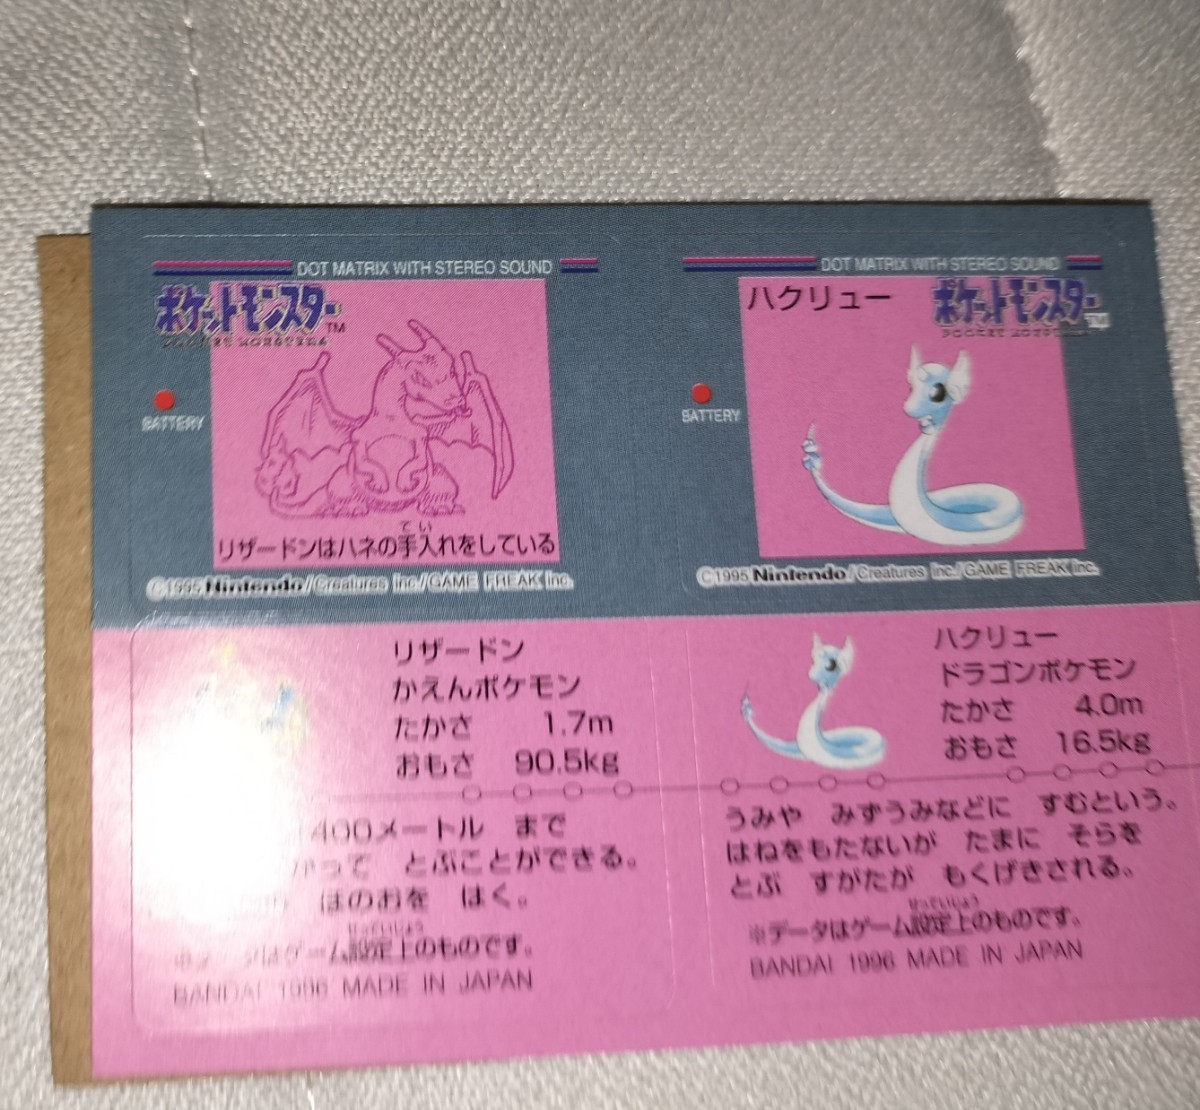 ポケモンスナック ポケットモンスター シール 1996 pokemon snack